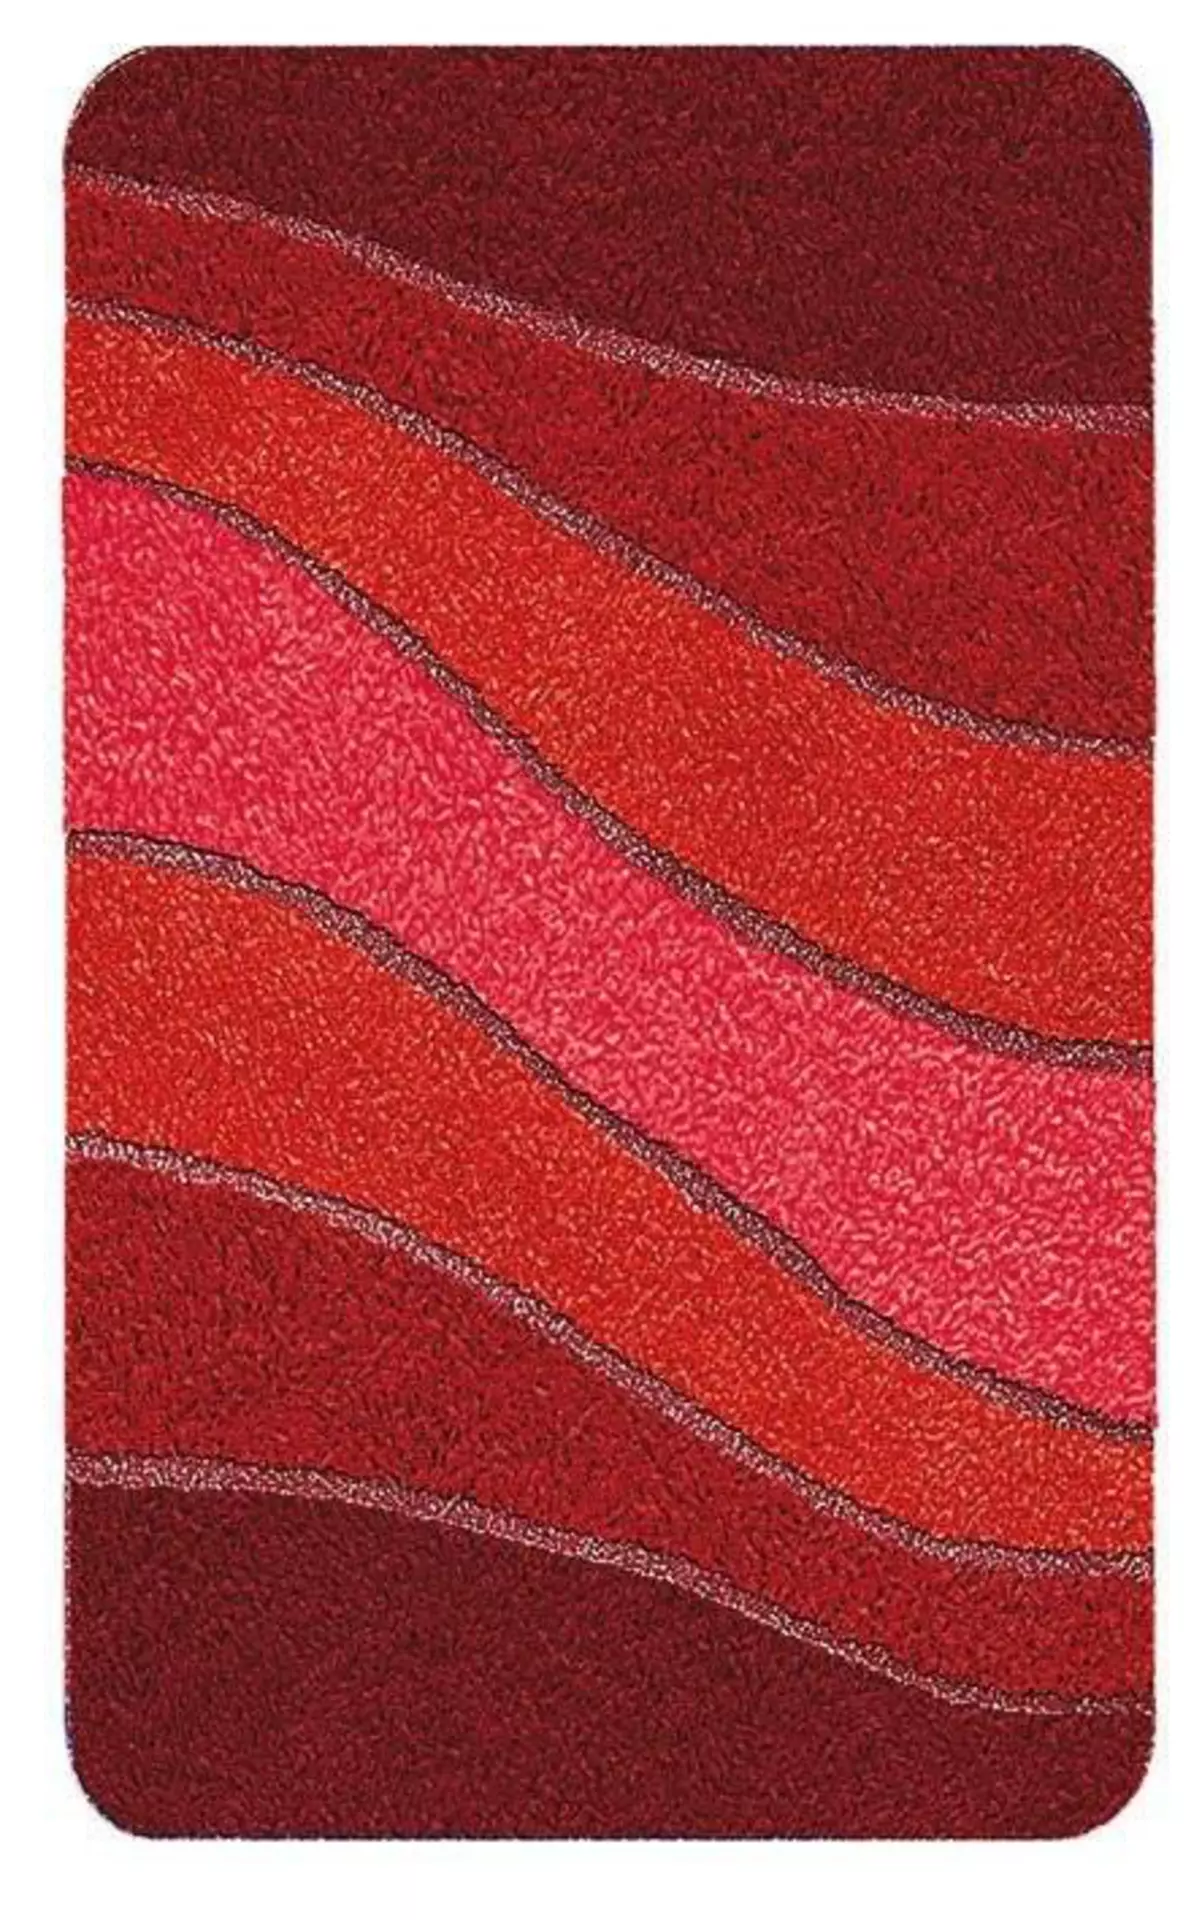 Badteppich Ocean Meusch Textil 65 x 2 x 55 cm